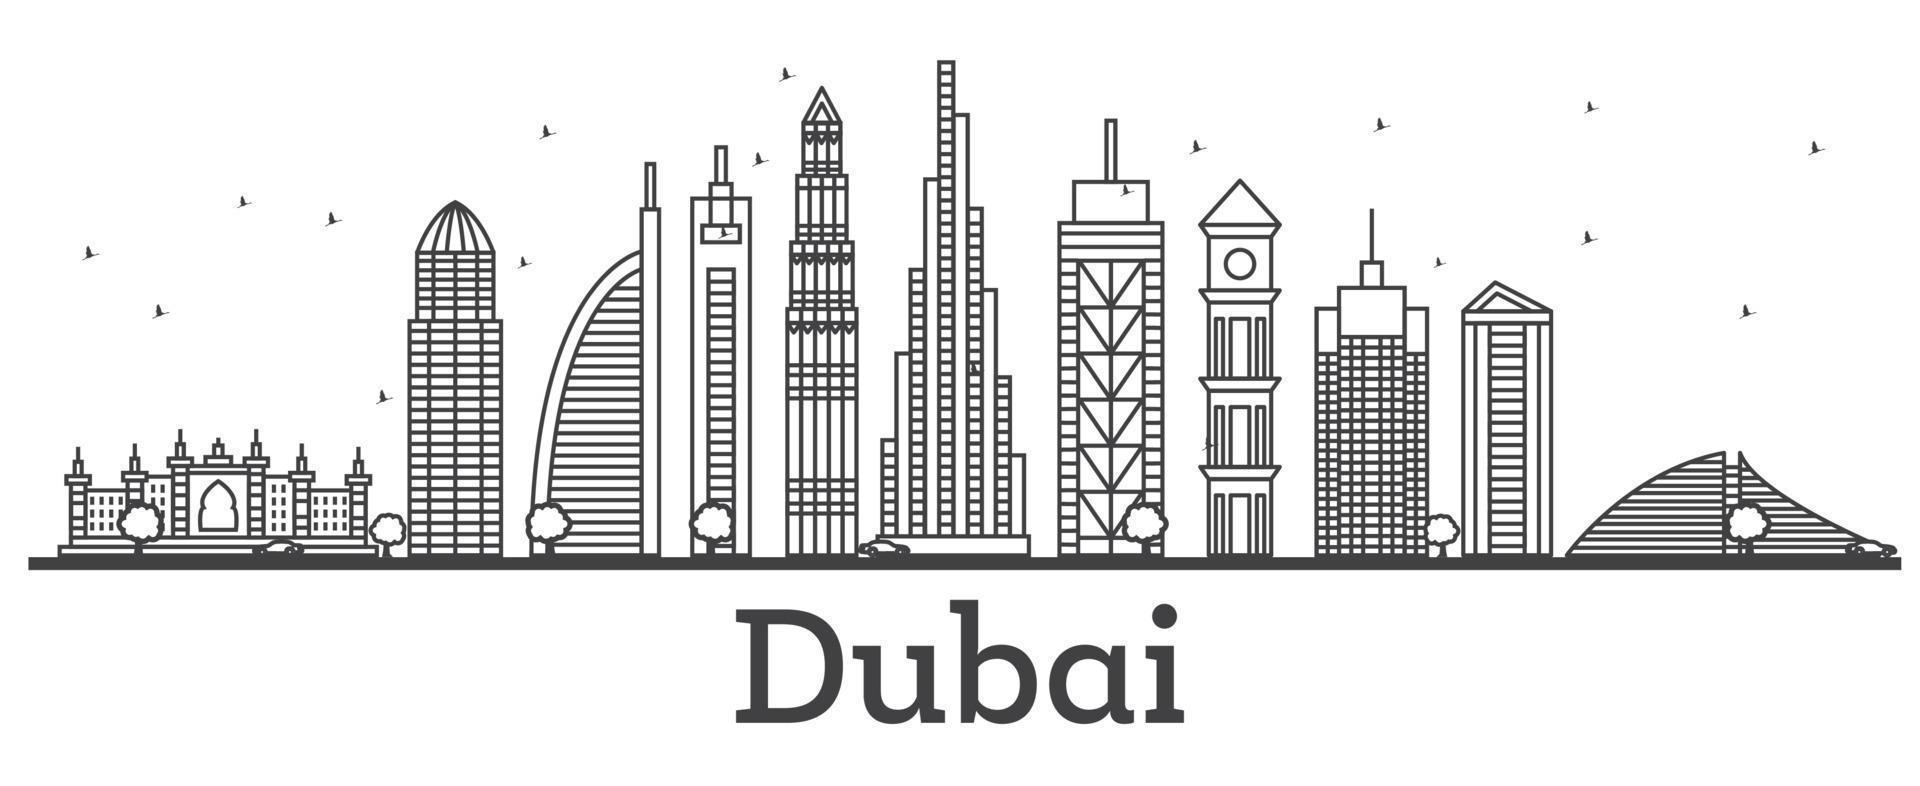 delineie o horizonte de dubai emirados árabes unidos com edifícios modernos. vetor